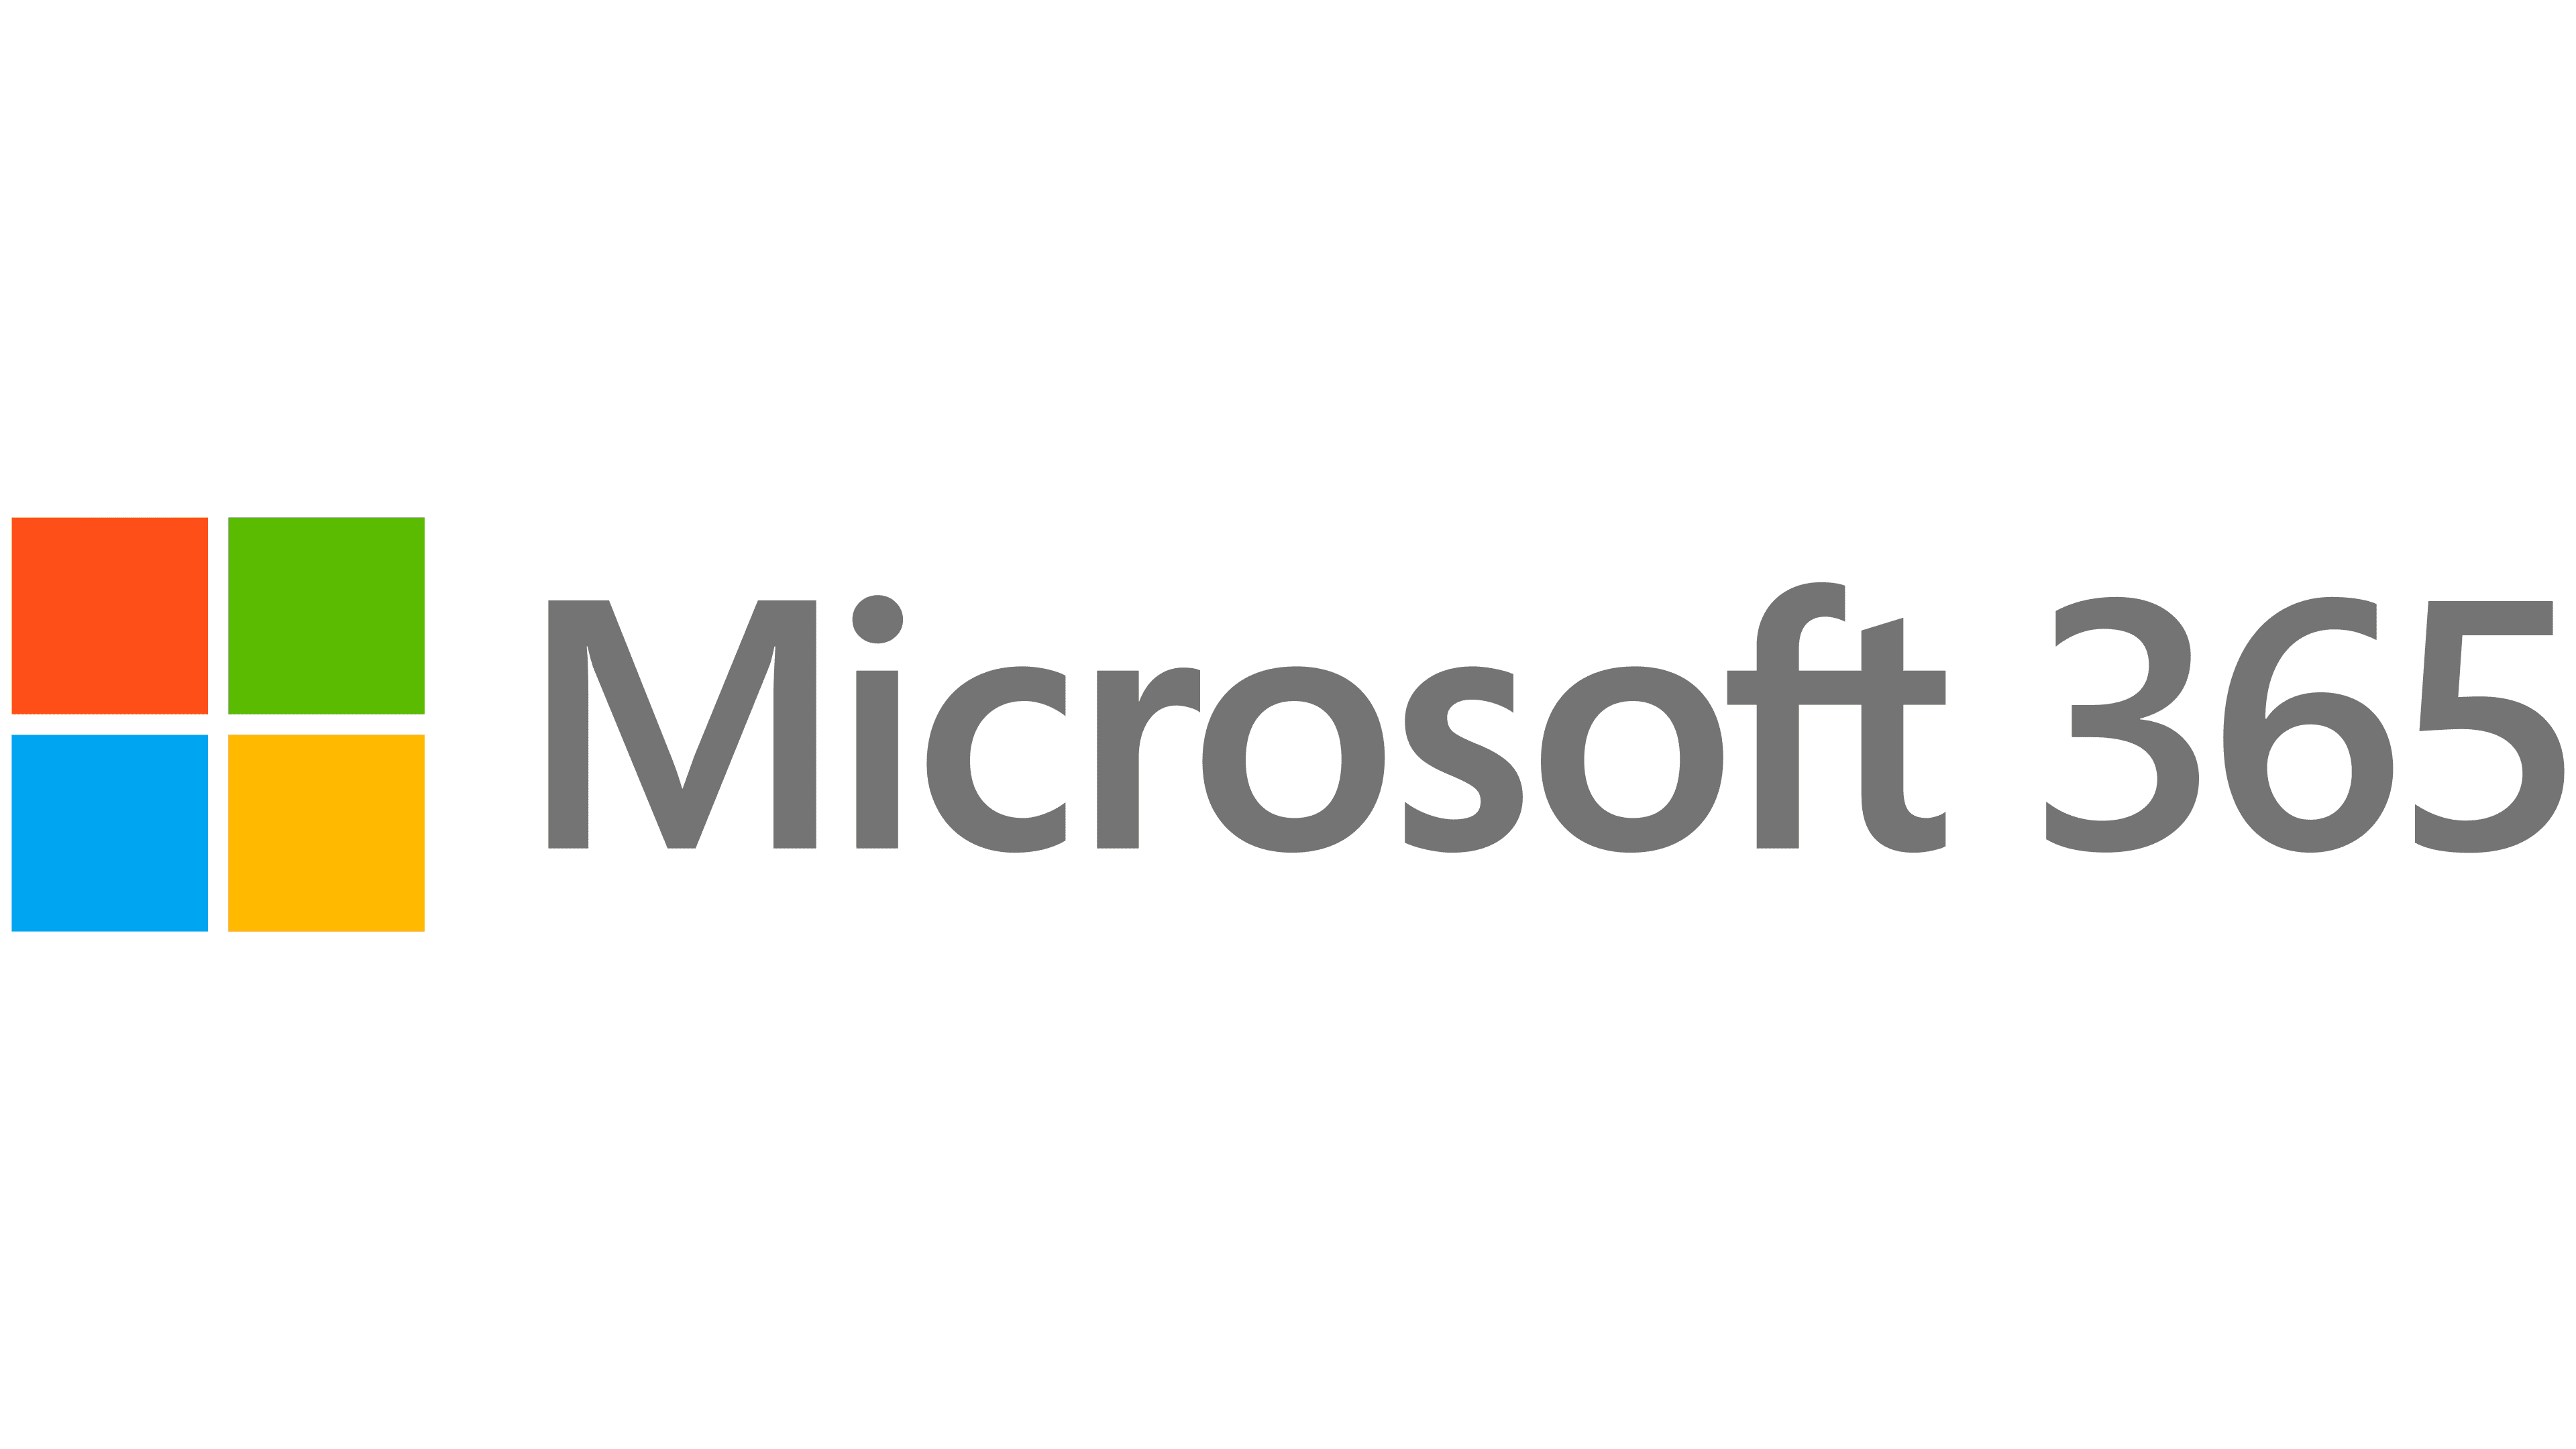 Microsoft Office 365 Logo : histoire, signification de l'emblème